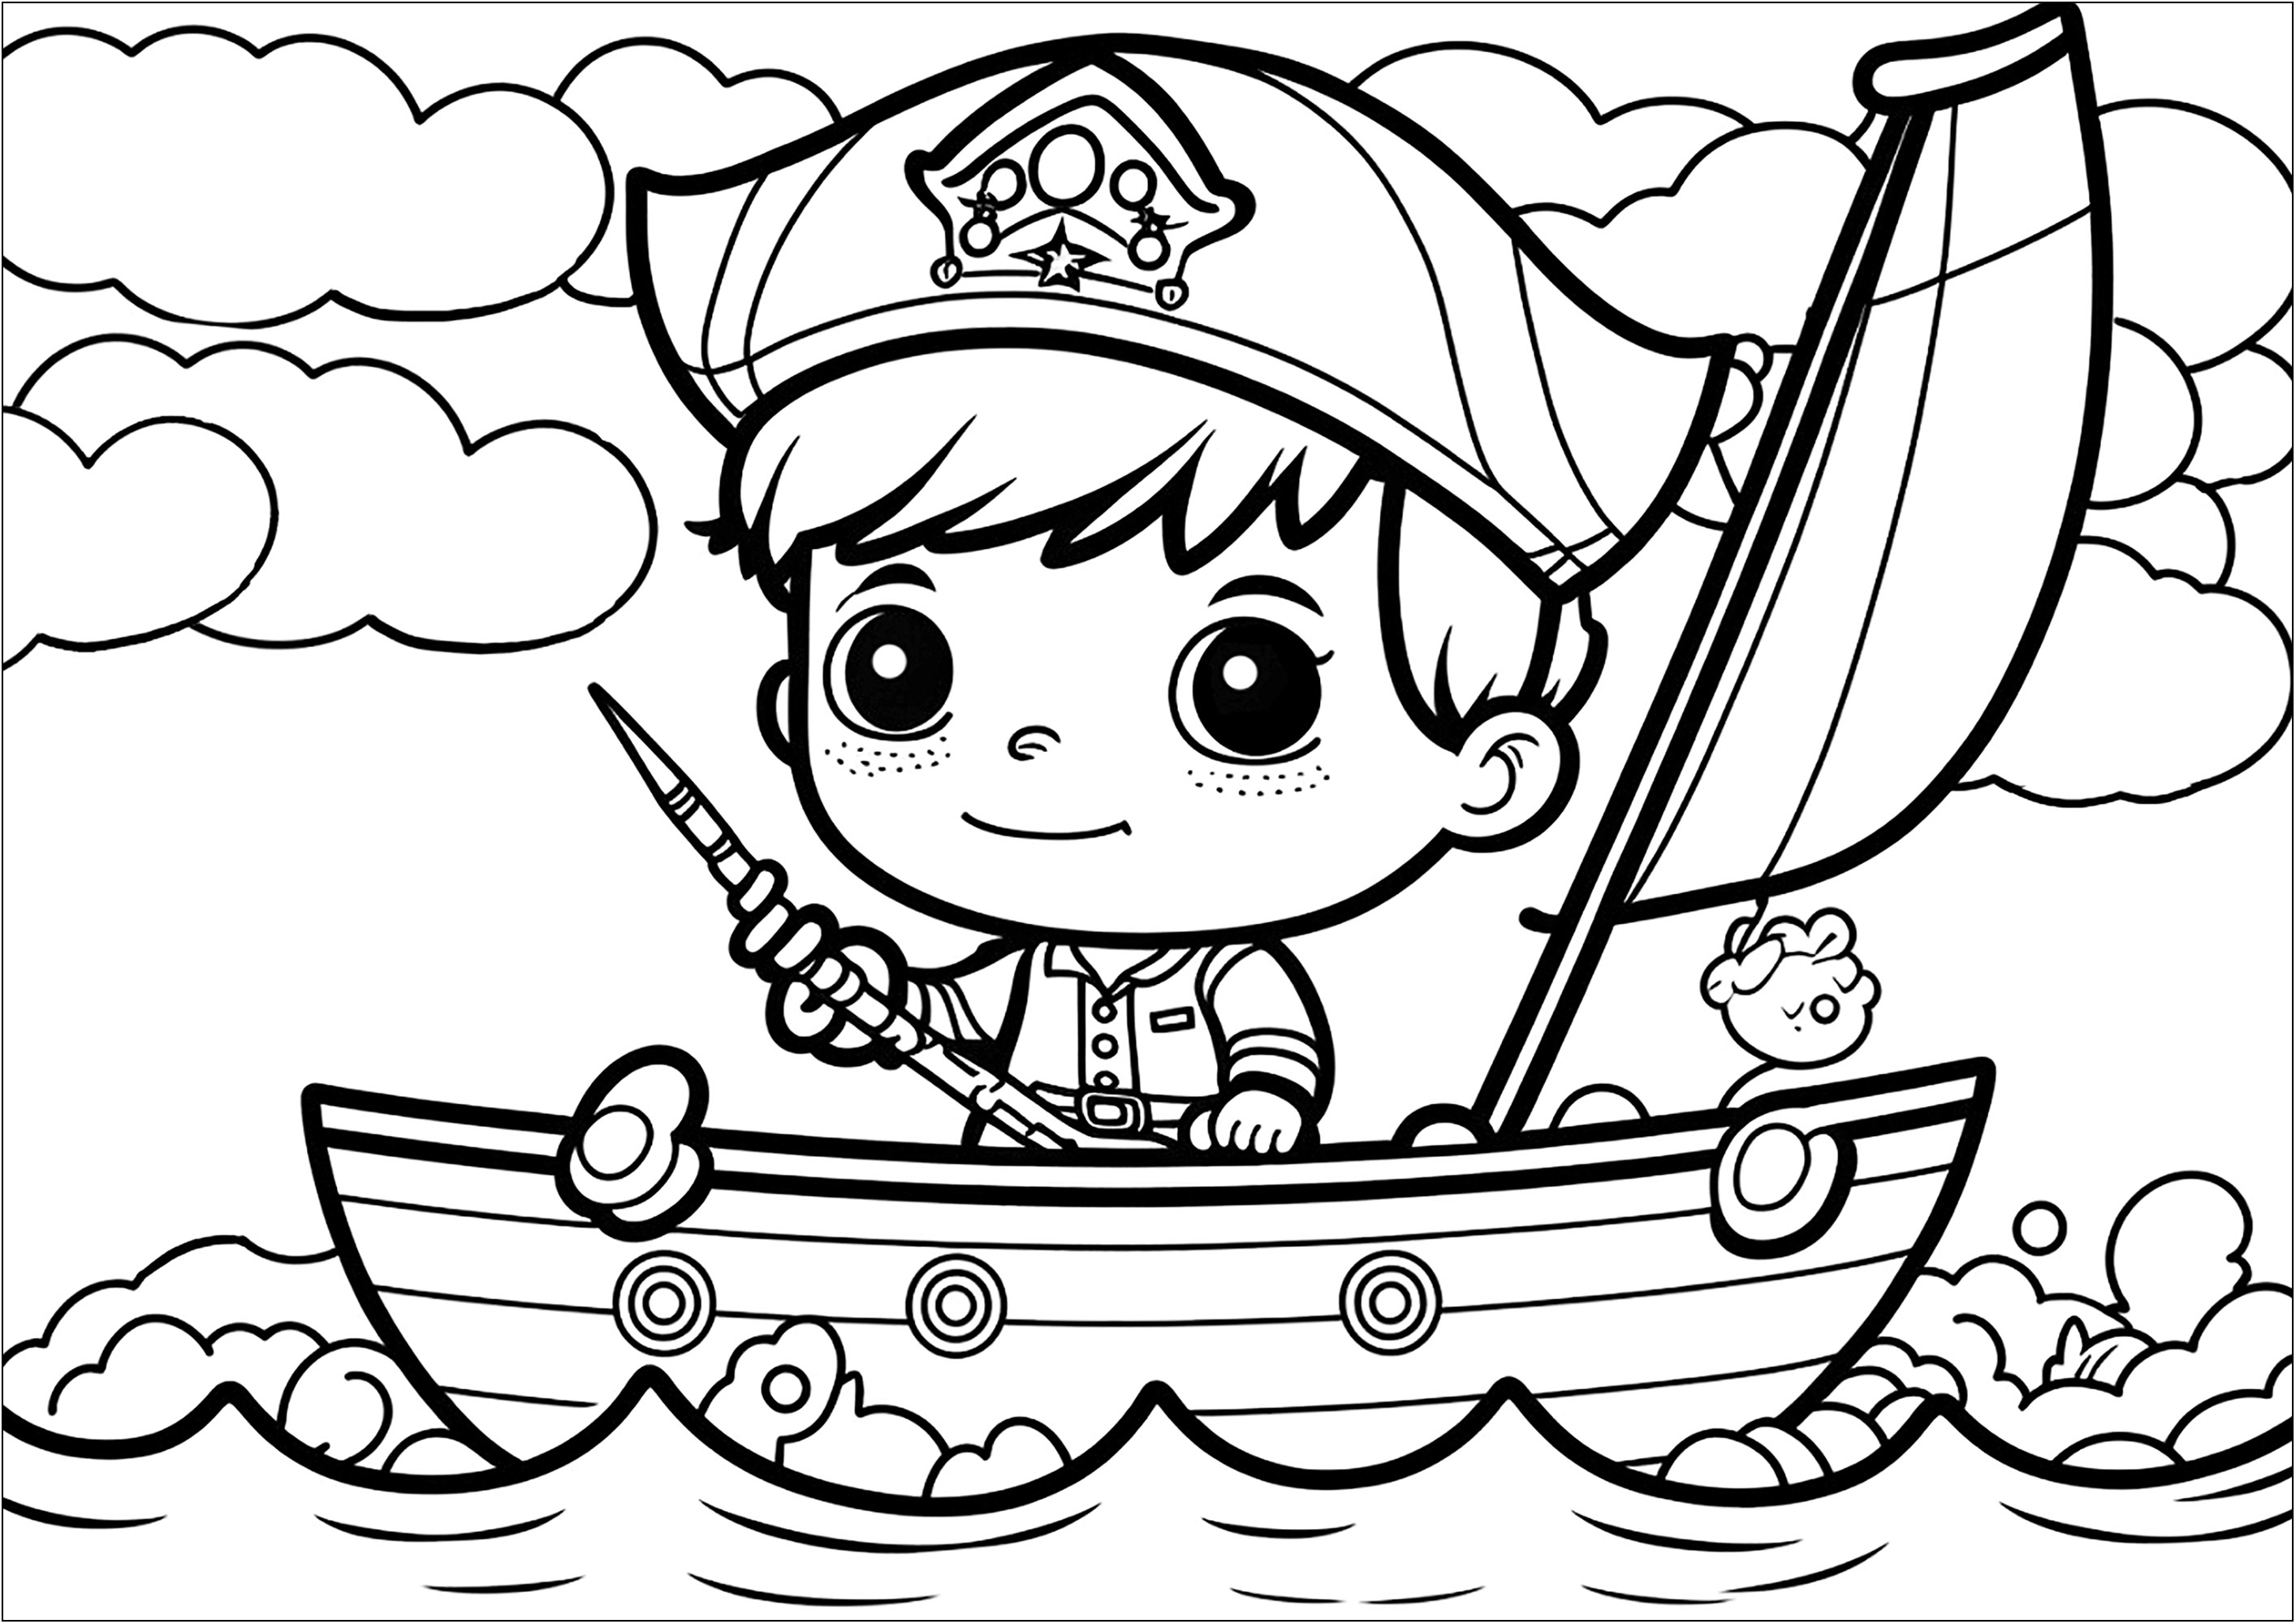 Página de coloração simples de um pirata ao estilo kawaii no seu barco. Esta página de coloração é perfeita para crianças que gostam do estilo Piratas e Kawaii! O desenho mostra um pequeno pirata a sorrir em cima do seu barco.